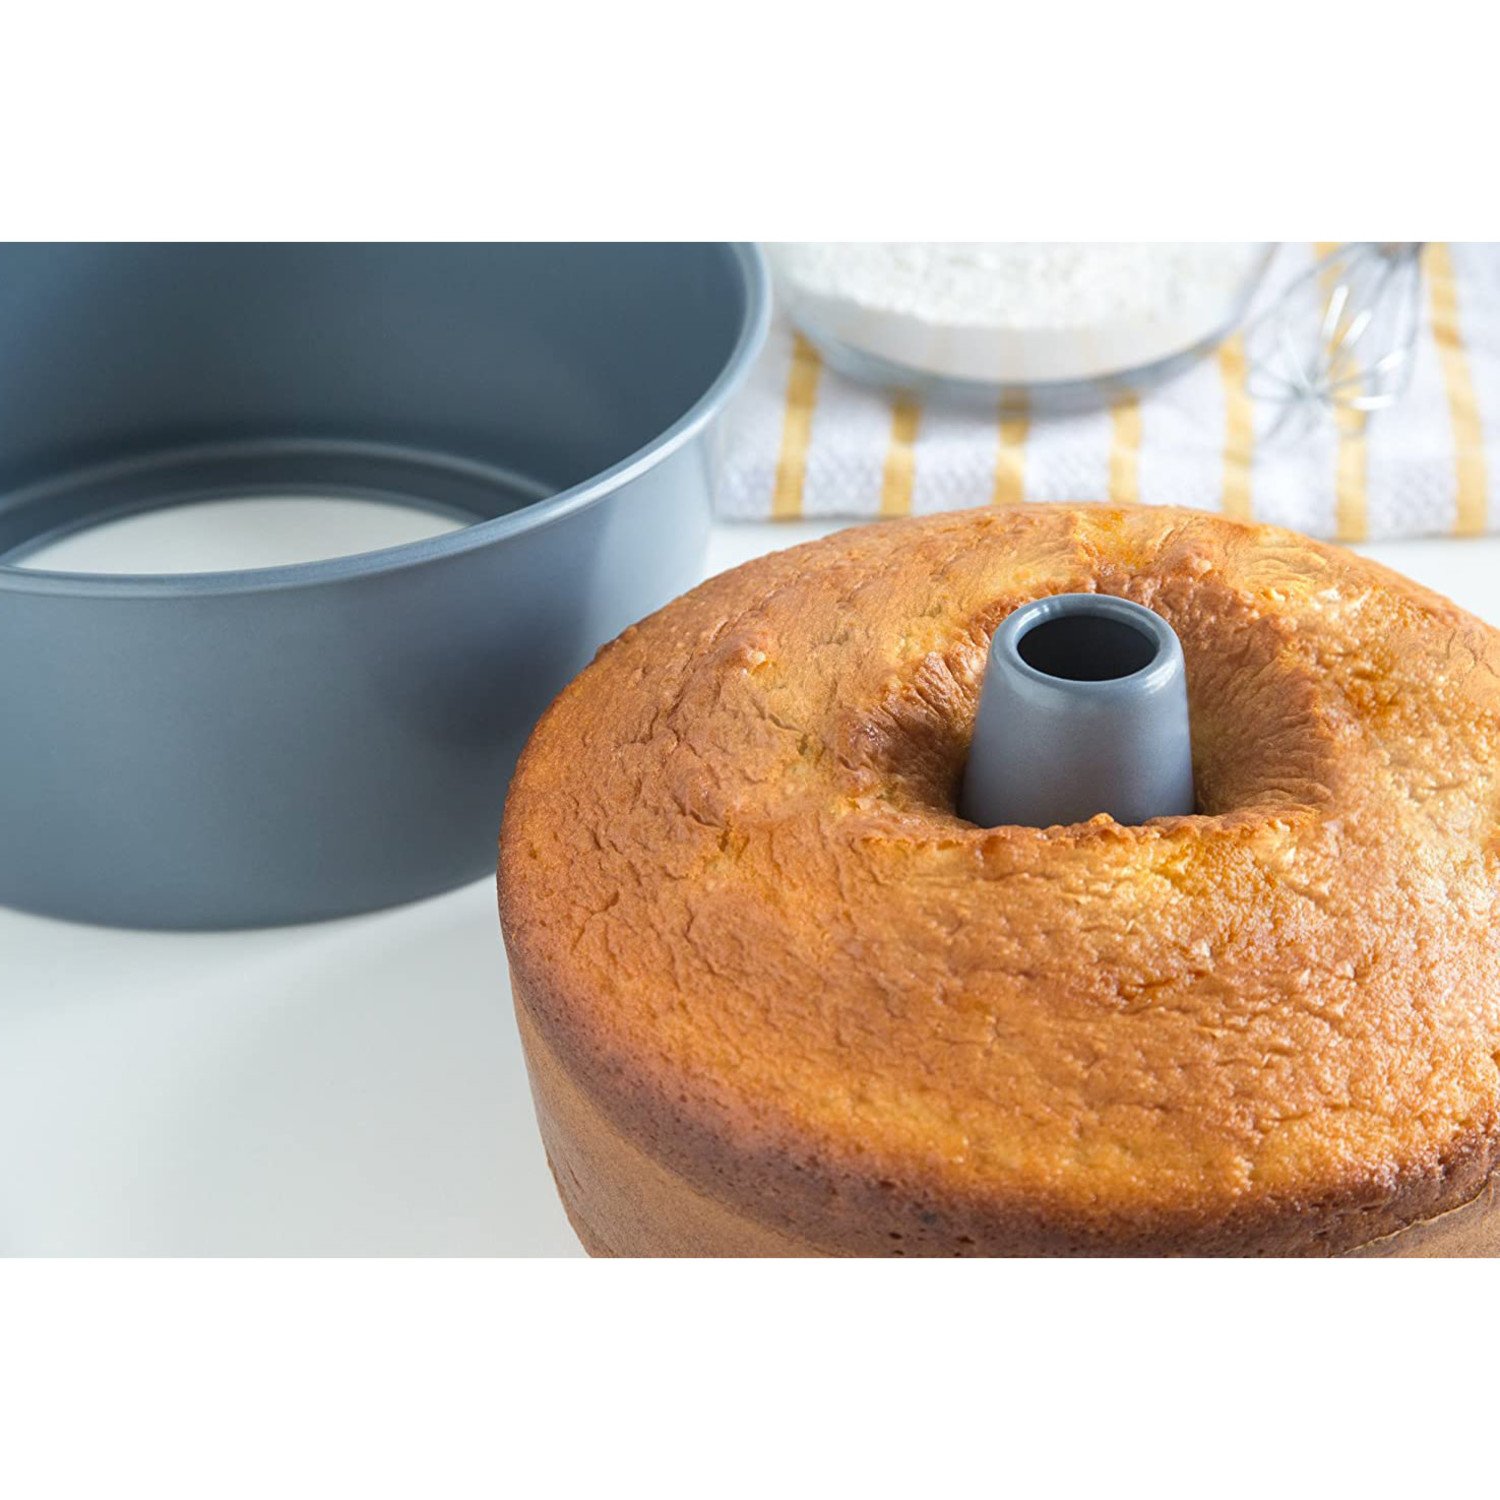 Round Pan Cake Pan, 9.5 Carbon Steel Cake Pan with Premium Food